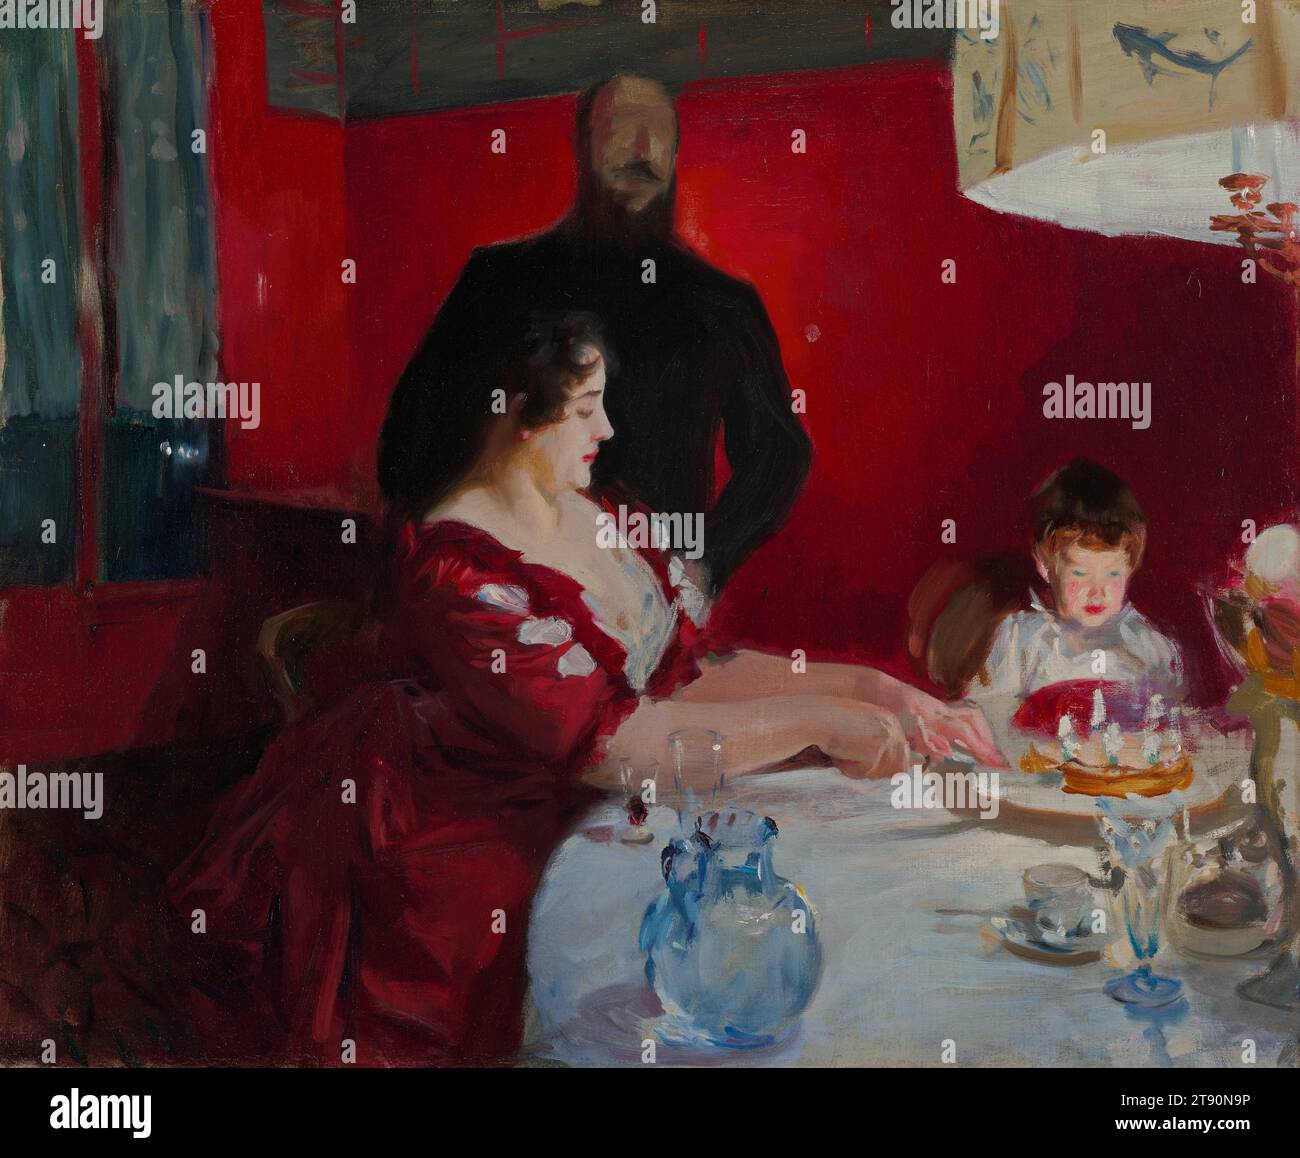 The Birthday Party, 1885, John Singer Sargent, américain, (mort en Angleterre), 1856 - 1925, 24 x 29 x 3/4 po (60,96 x 73,66 x 1,91 cm) (toile)23 1/2 x 28 1/2 po (59,69 x 72,39 cm) (vue)32 x 37 x 2 3/4 po (81,28 x 93,98 x 6,99 cm) (cadre extérieur), huile sur toile, États-Unis, 19e siècle, cette œuvre peinte avec véhémence est l’une des nombreuses scènes d’intérieur des années 1880 avec des portraits d’amis de Sargent. Ici, les artistes français Albert Besnard (1849-1934) et Charlotte Dubray Besnard (1855-1931) célèbrent l'anniversaire de leur fils aîné, Robert Banque D'Images